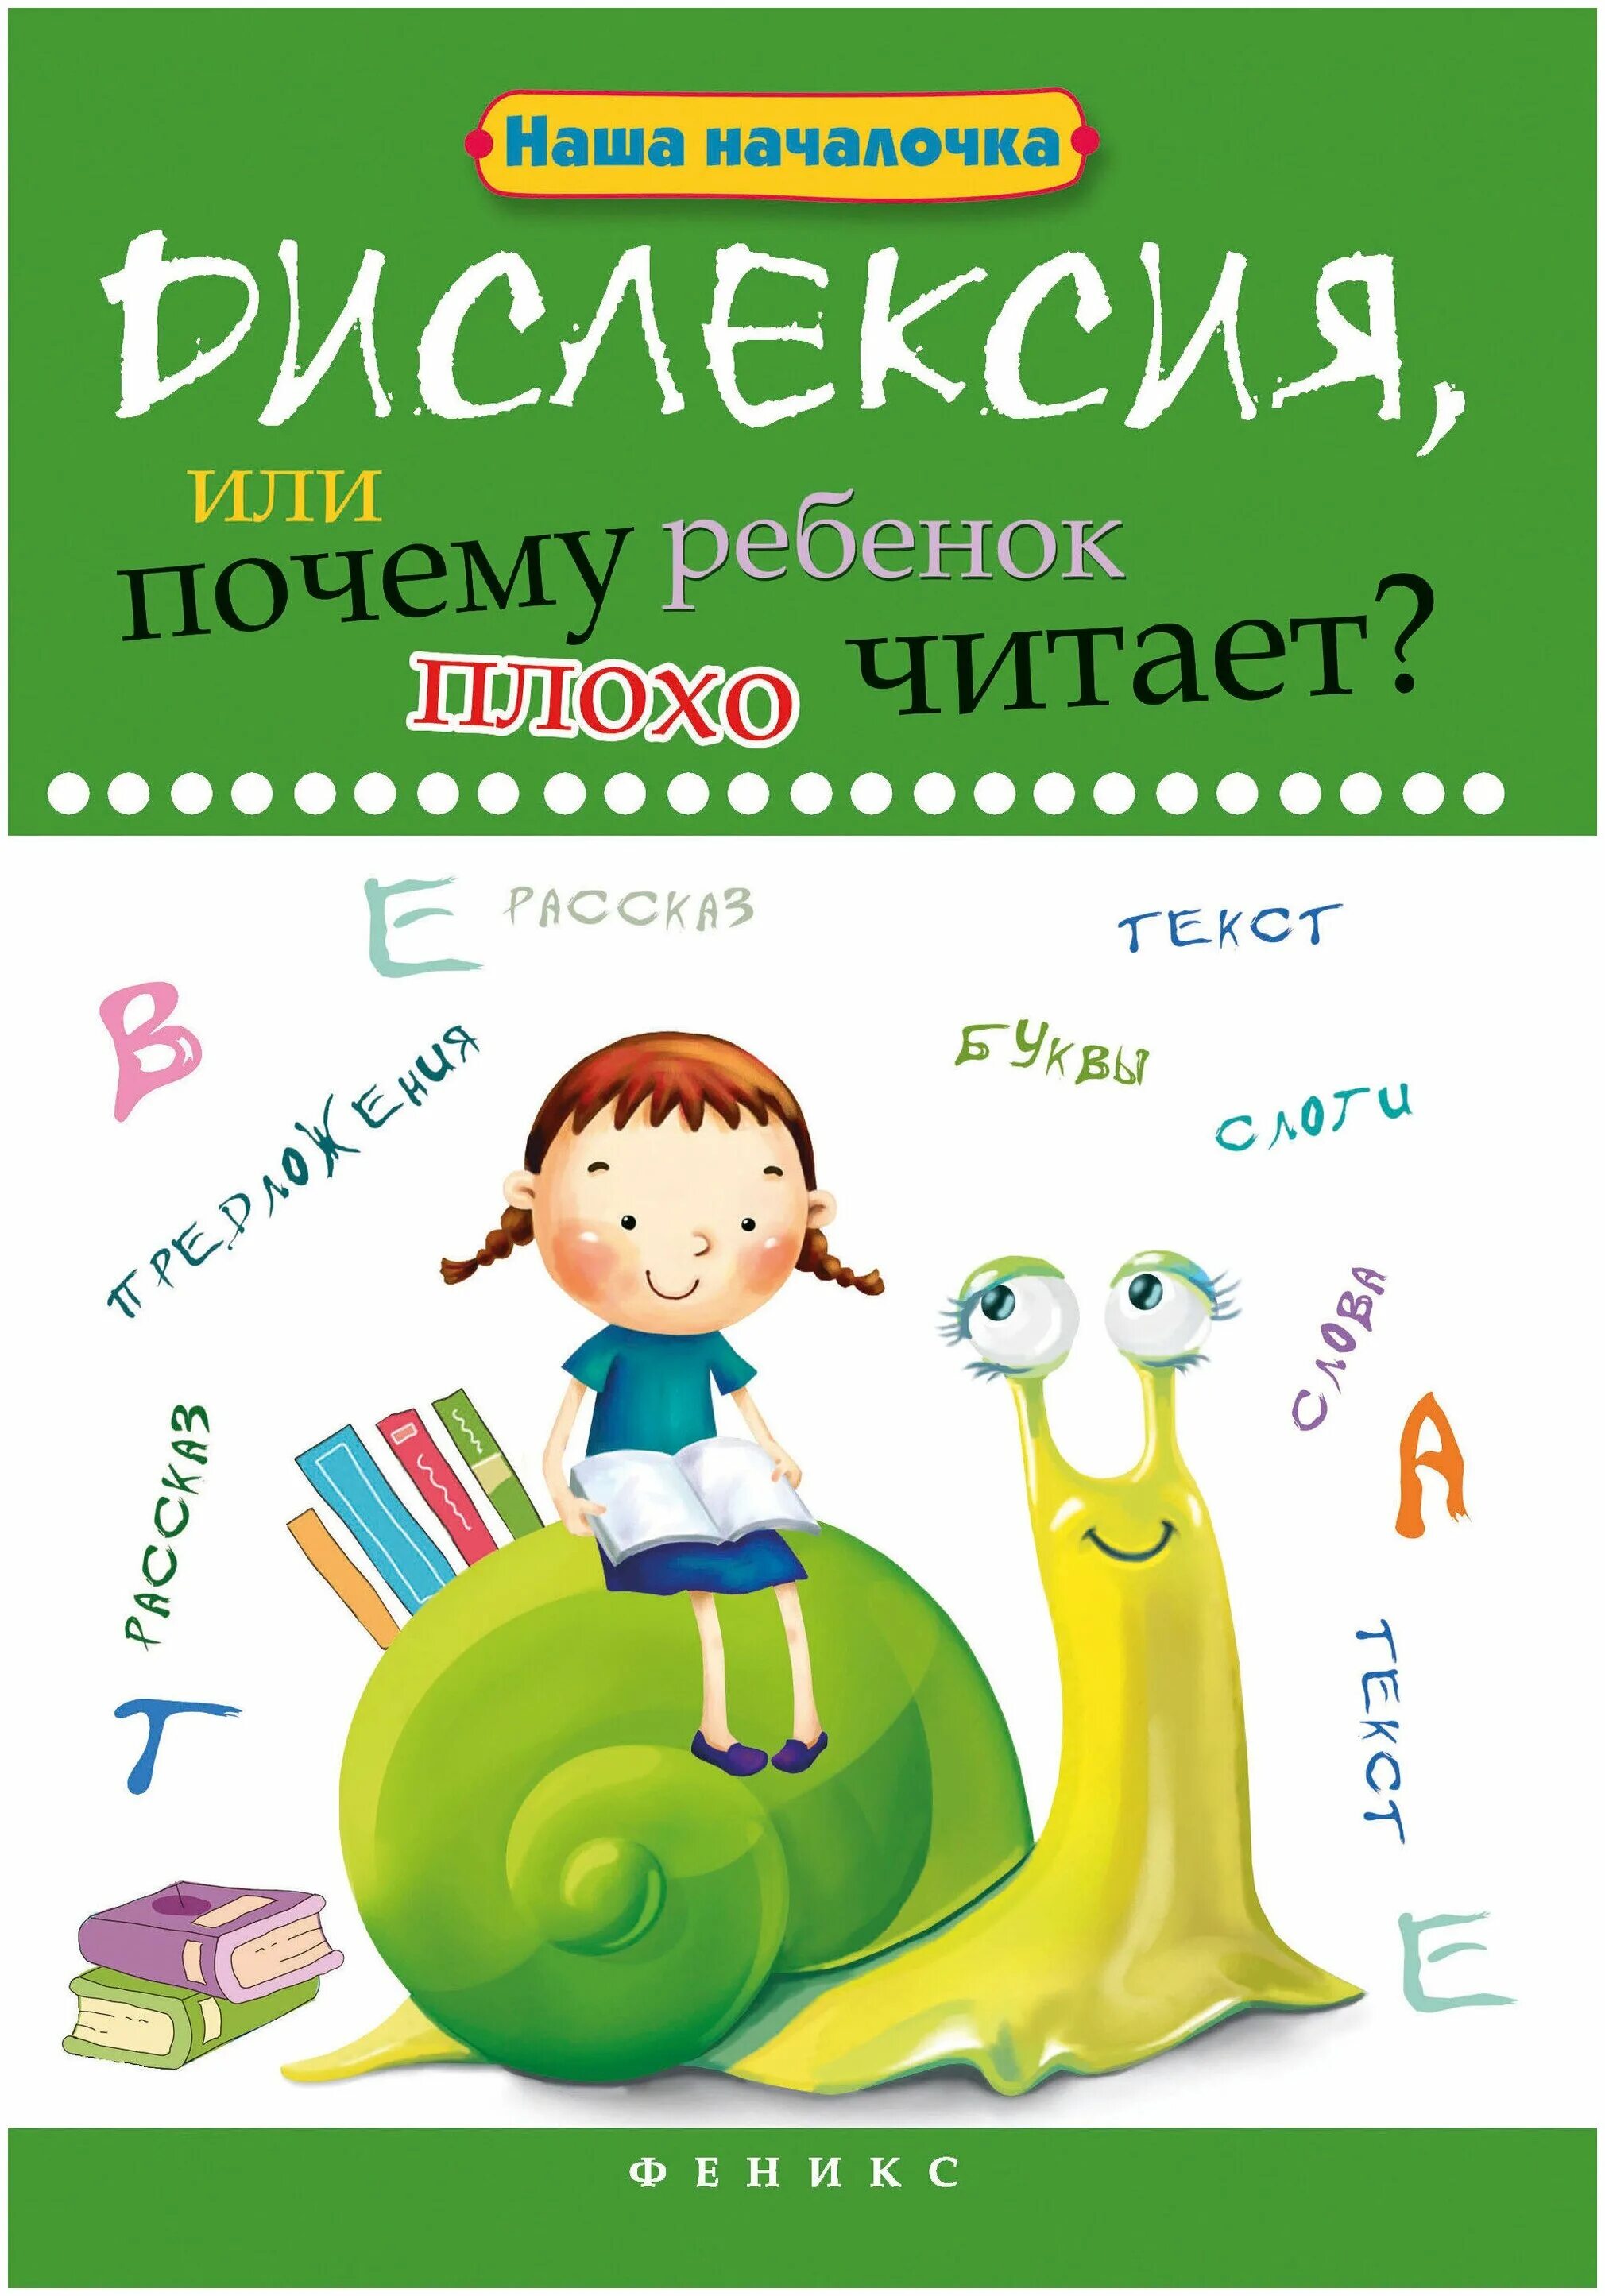 Корнева дислексия. Дислексия или почему ребенок плохо читает. Книги по дислексии. Наша началочка дислексия. Книги для детей с дислексией.